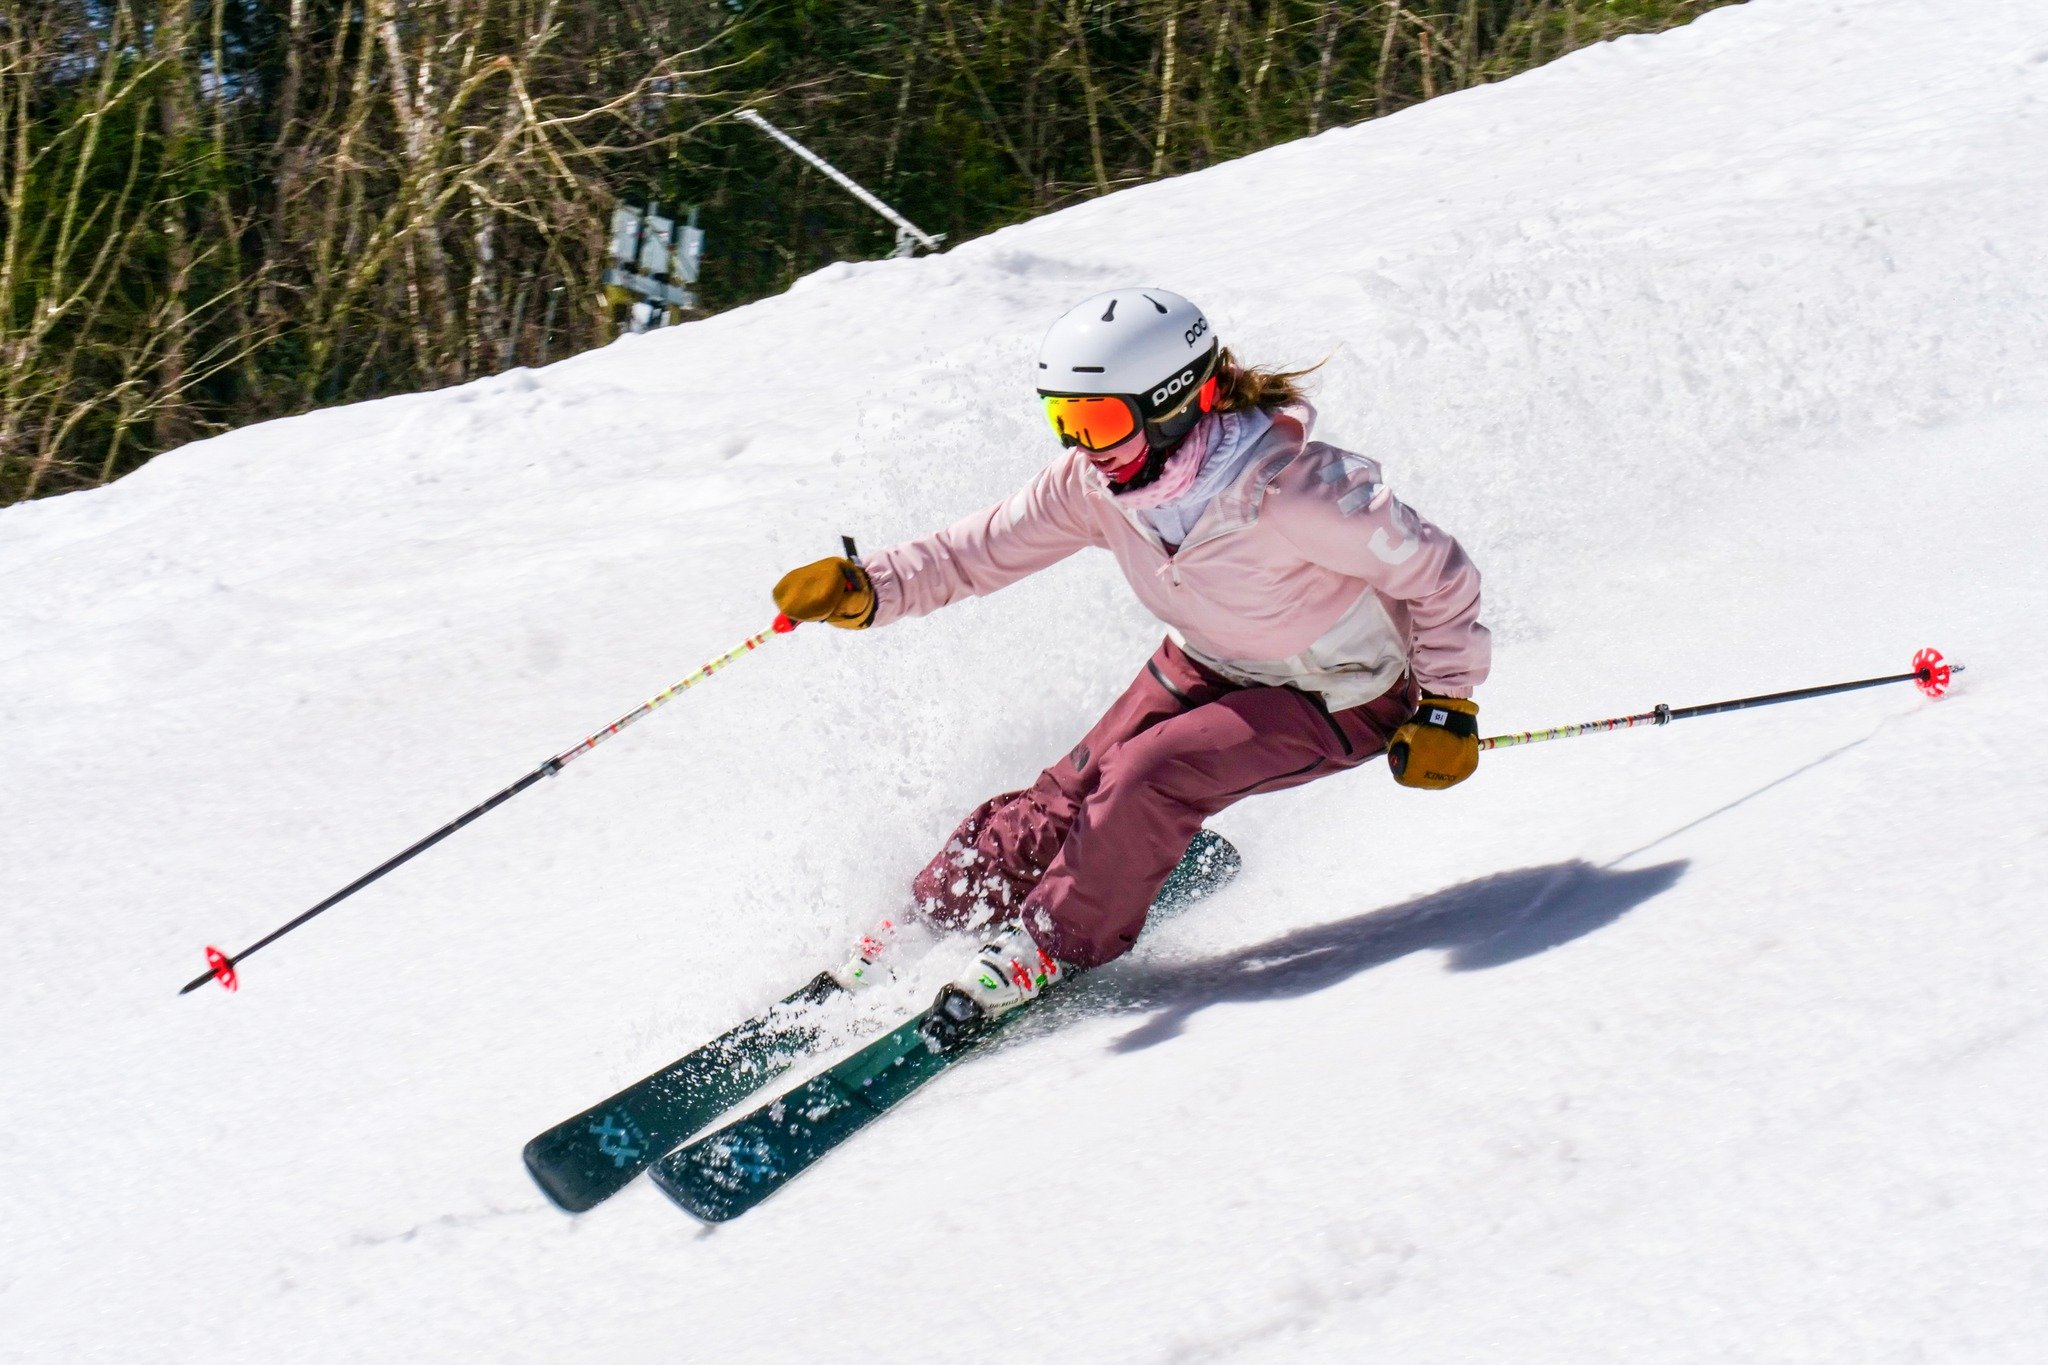 Spring Skiing Checklist:
✅ Sun
✅ Soft Snow
✅ Schwendi Stops

#watervillevalley #nextlevel #springskiing